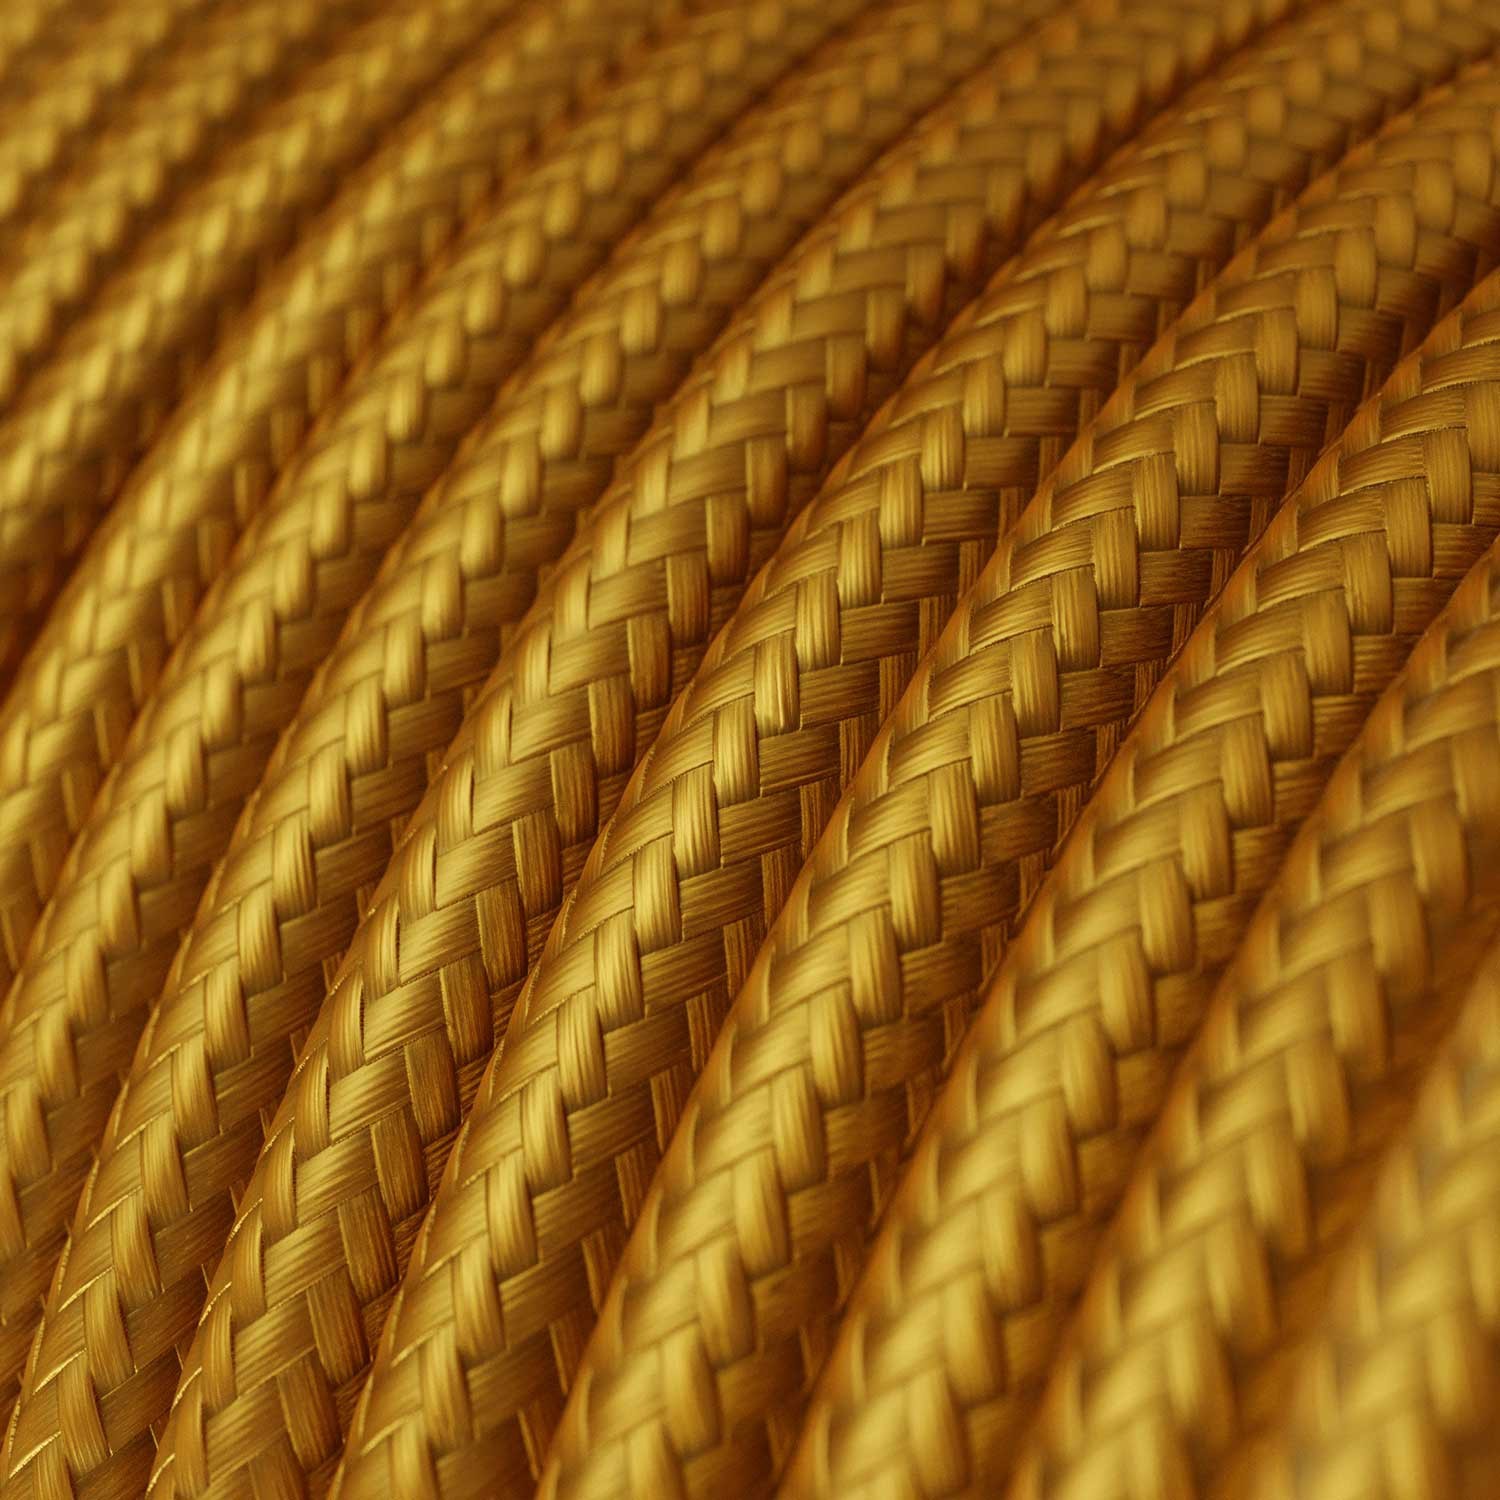 Câble textile rond 2x0,75 10 cm - RM05